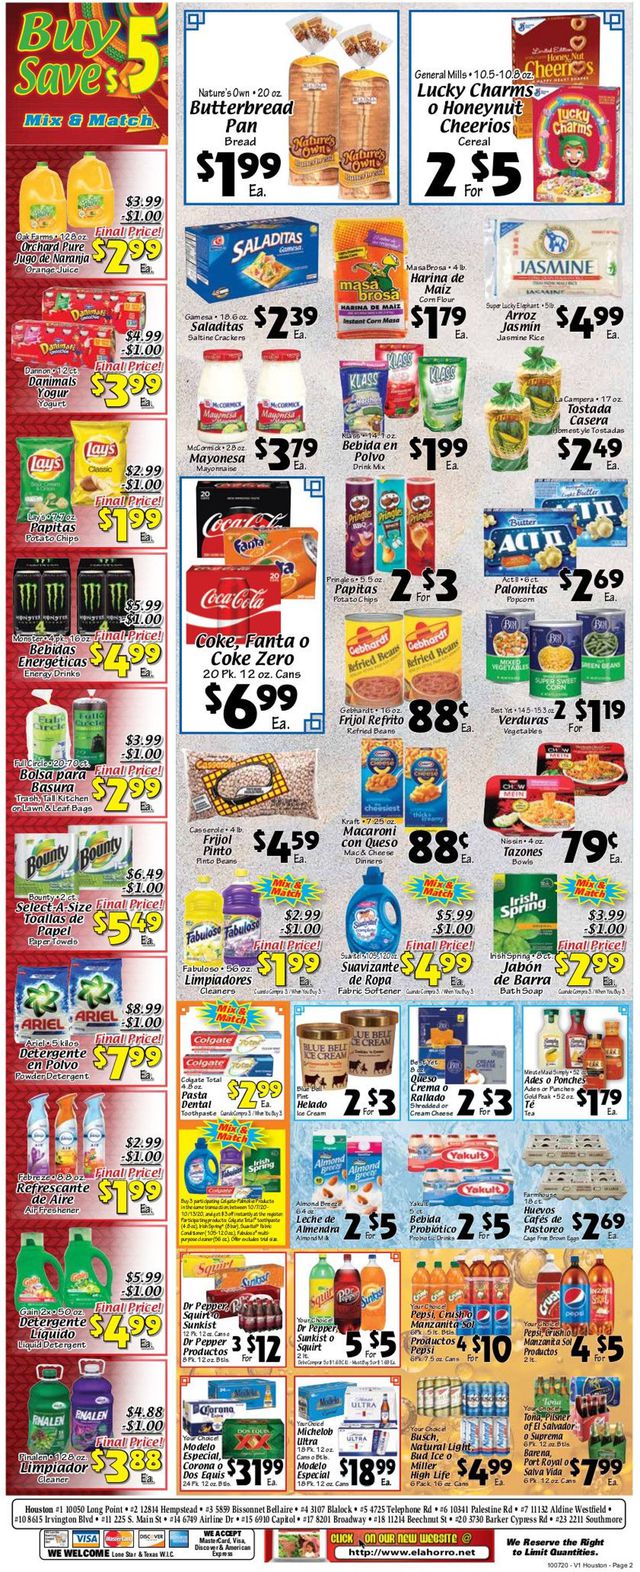 El Ahorro Supermarket Ad from 10/07/2020